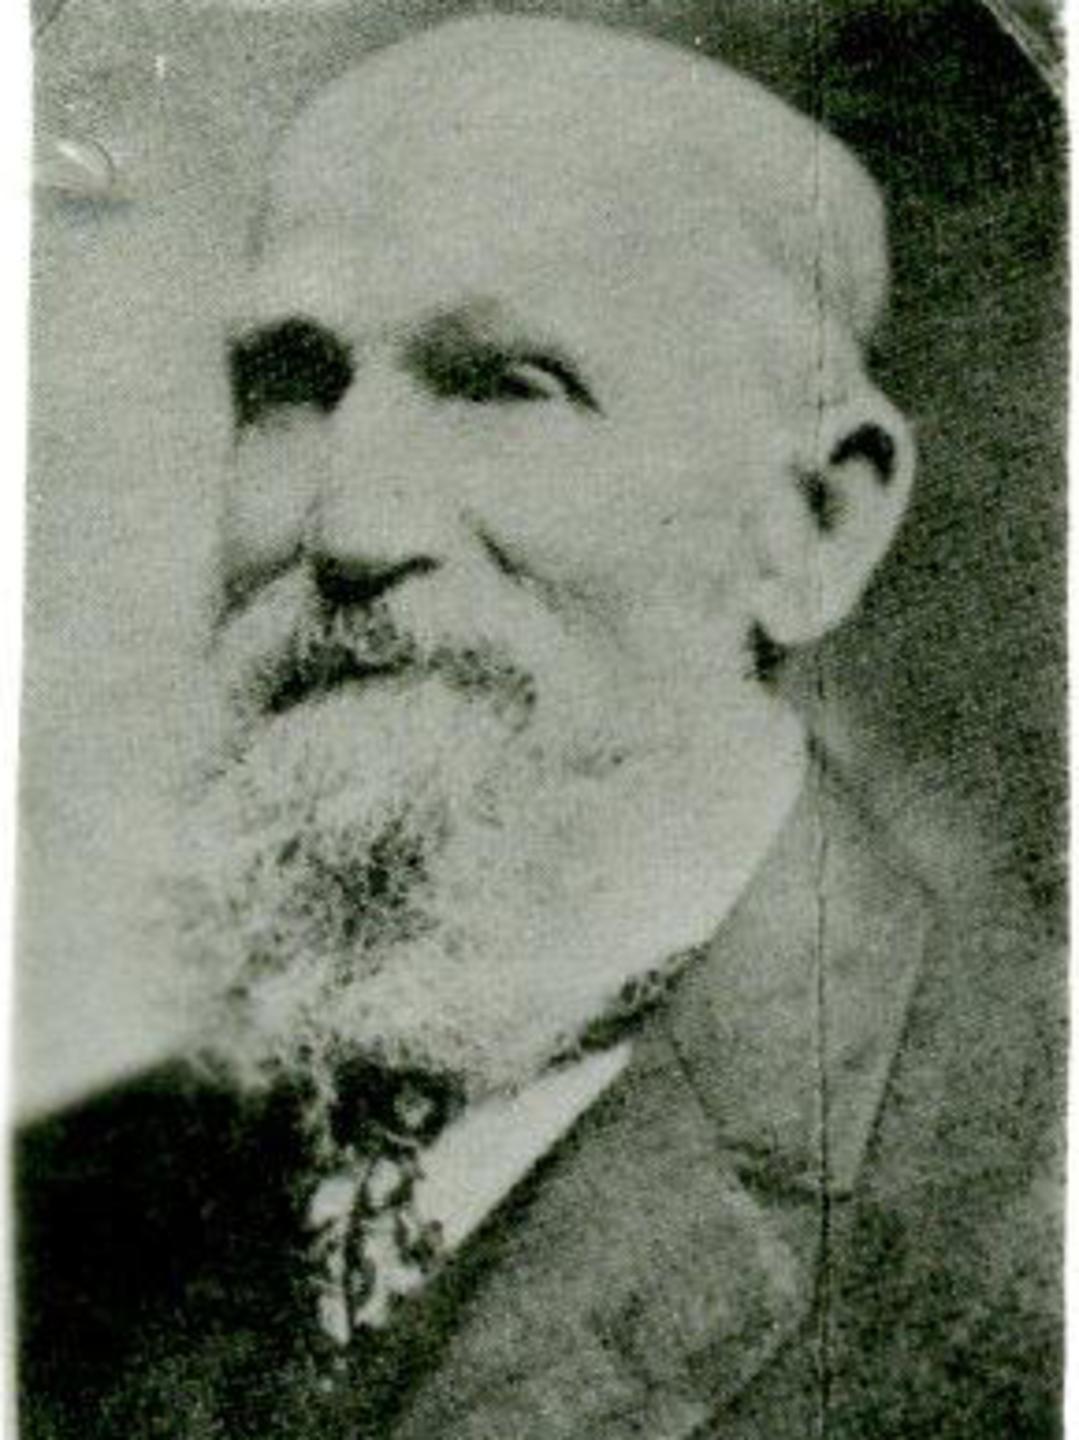 Jacob Zollinger (1845 - 1942)